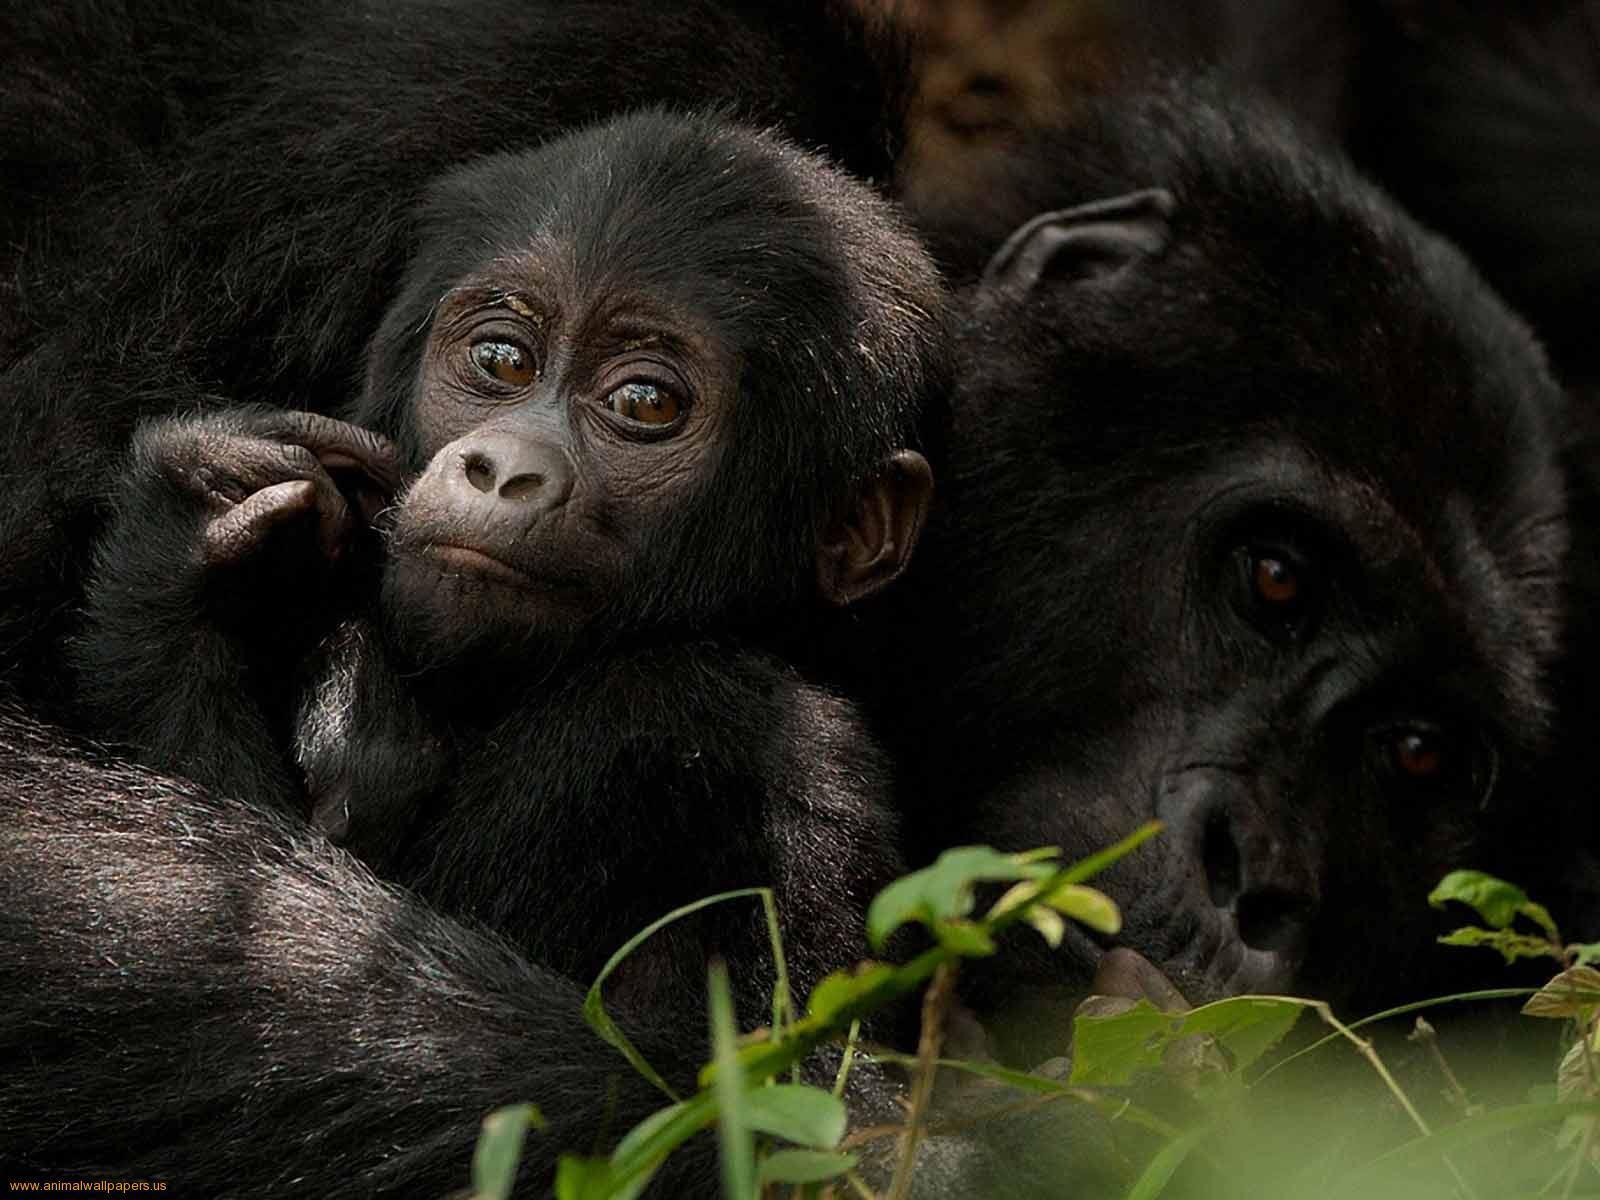 Newborn Baby Gorillas